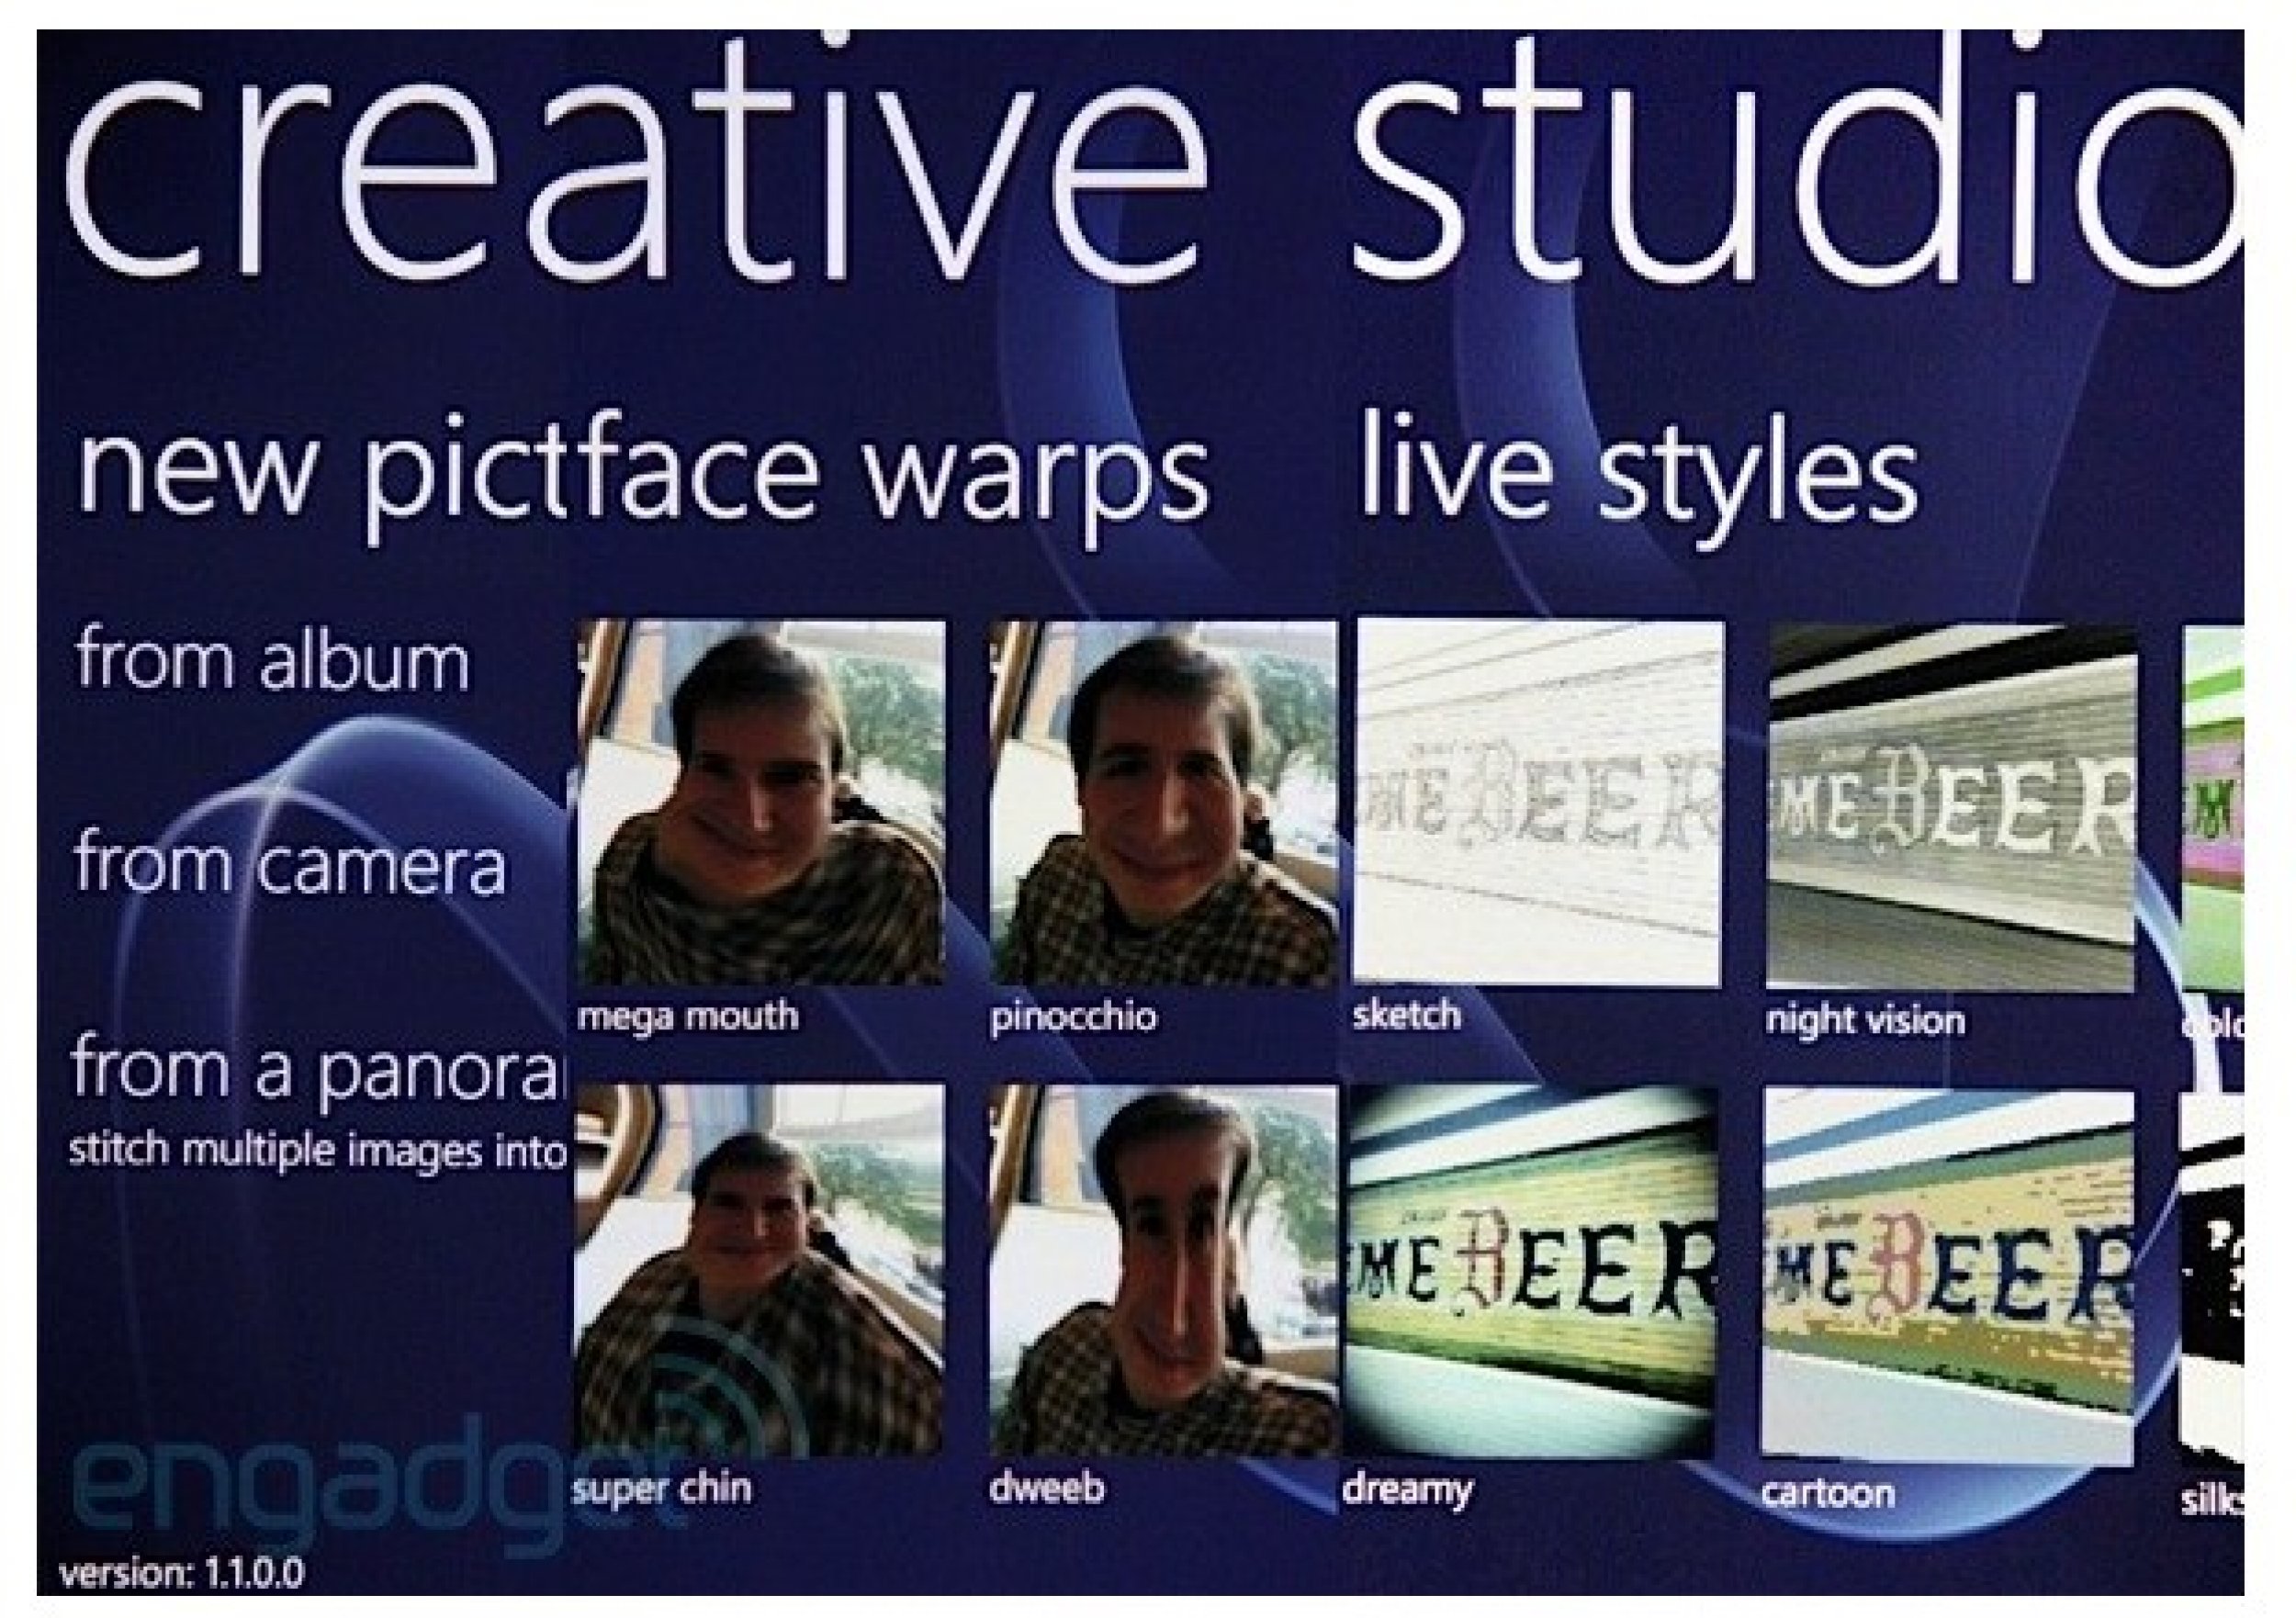 Nokia Creative Studio